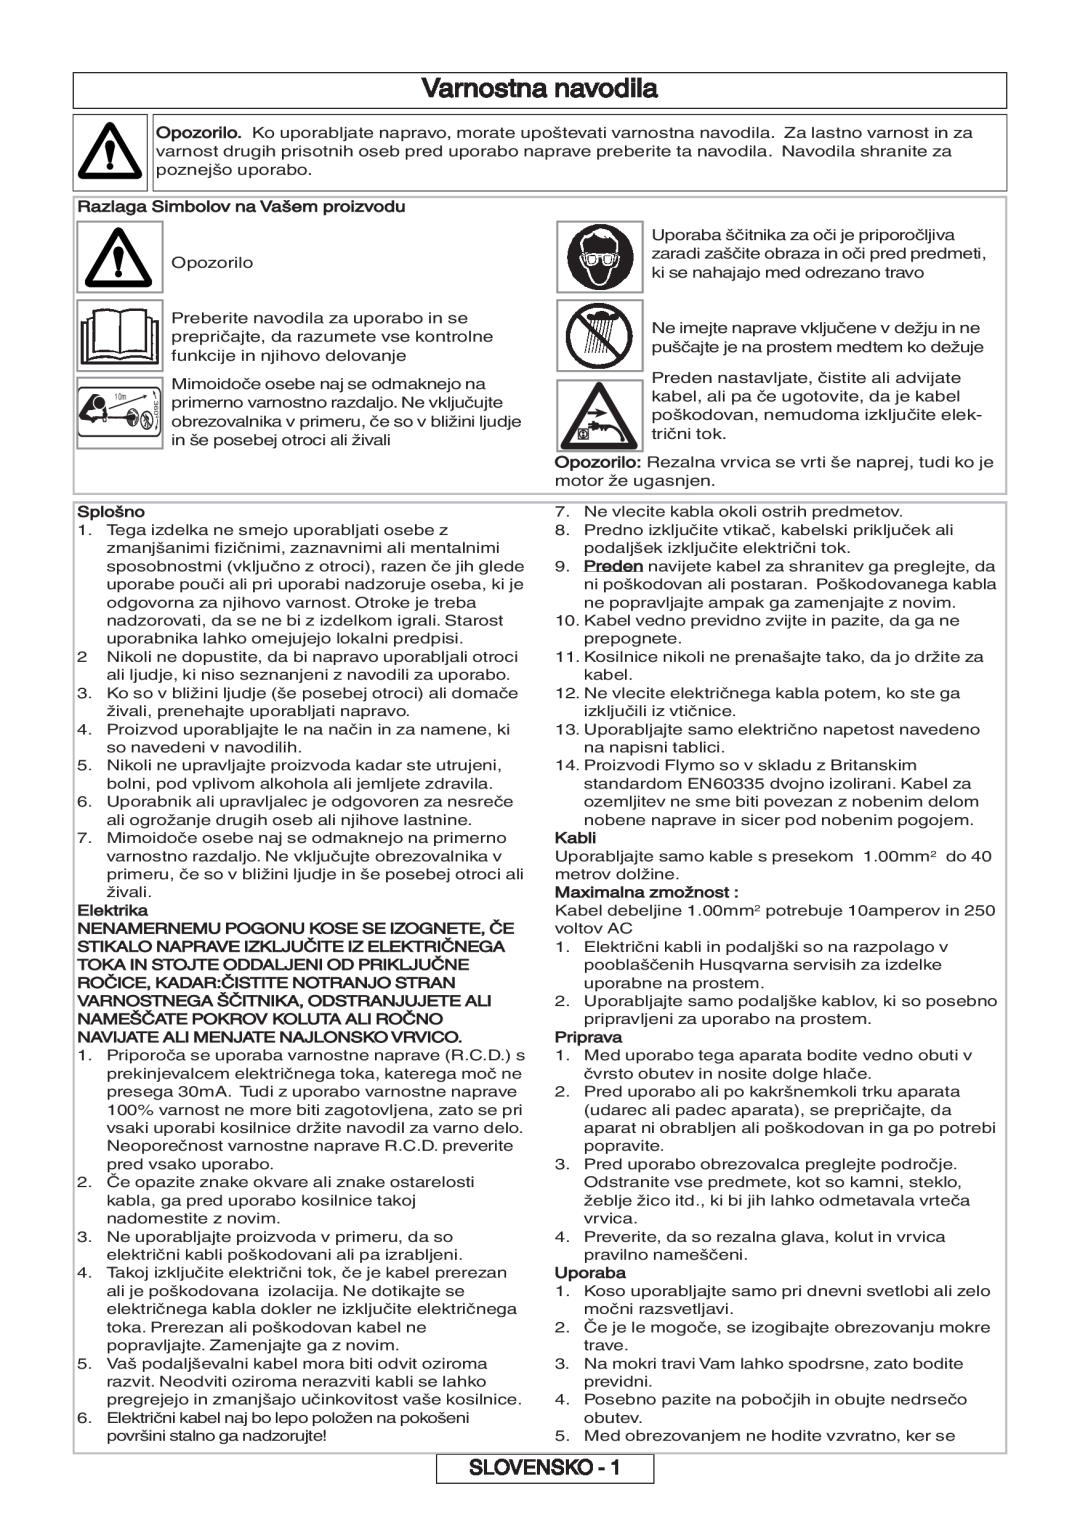 Flymo 600 HD manual Varnostna navodila, Slovensko 